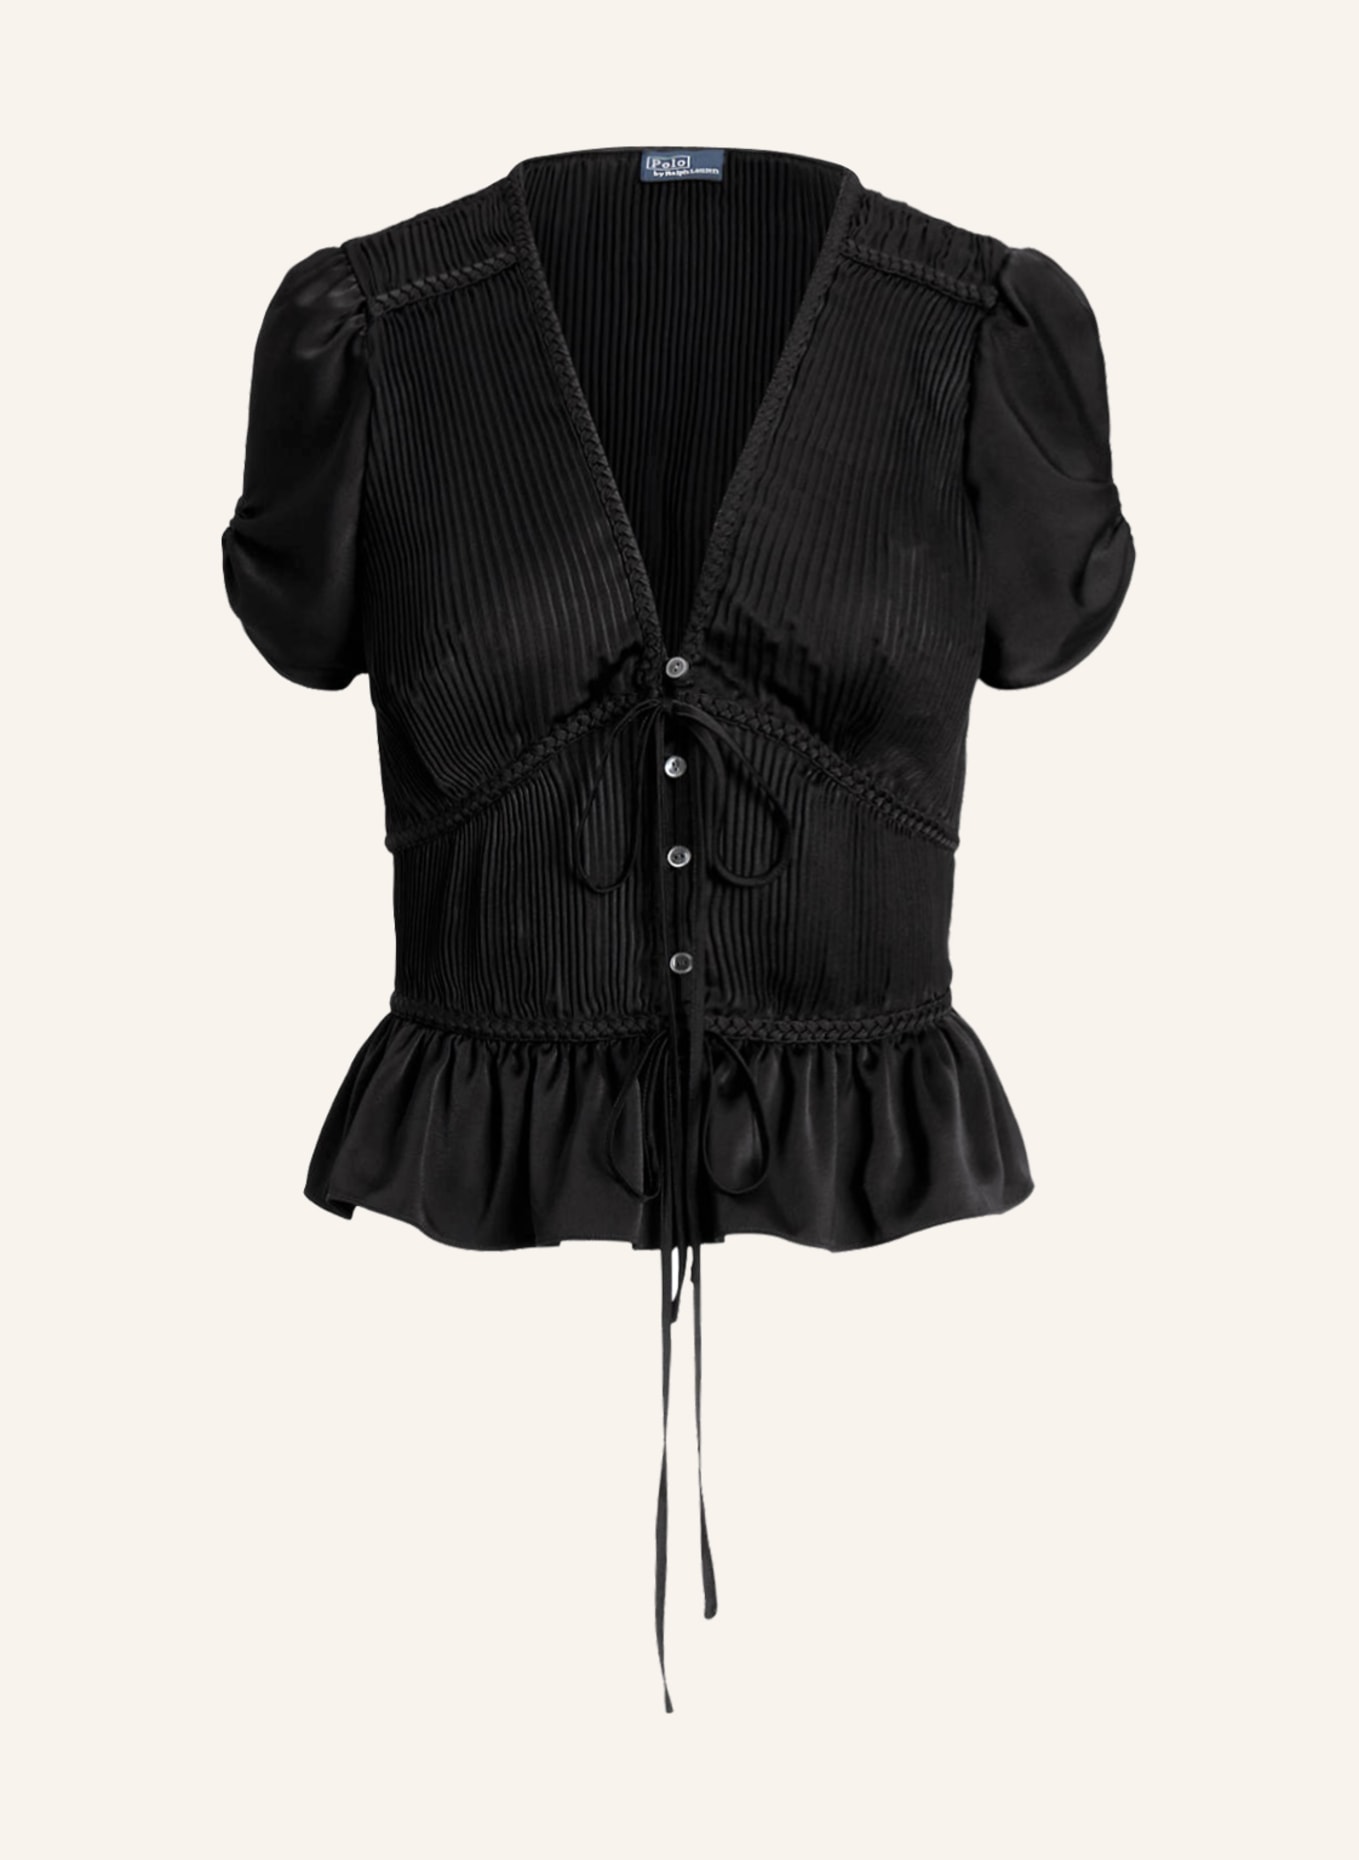 POLO RALPH LAUREN Satin blouse with pleats, Color: BLACK (Image 1)